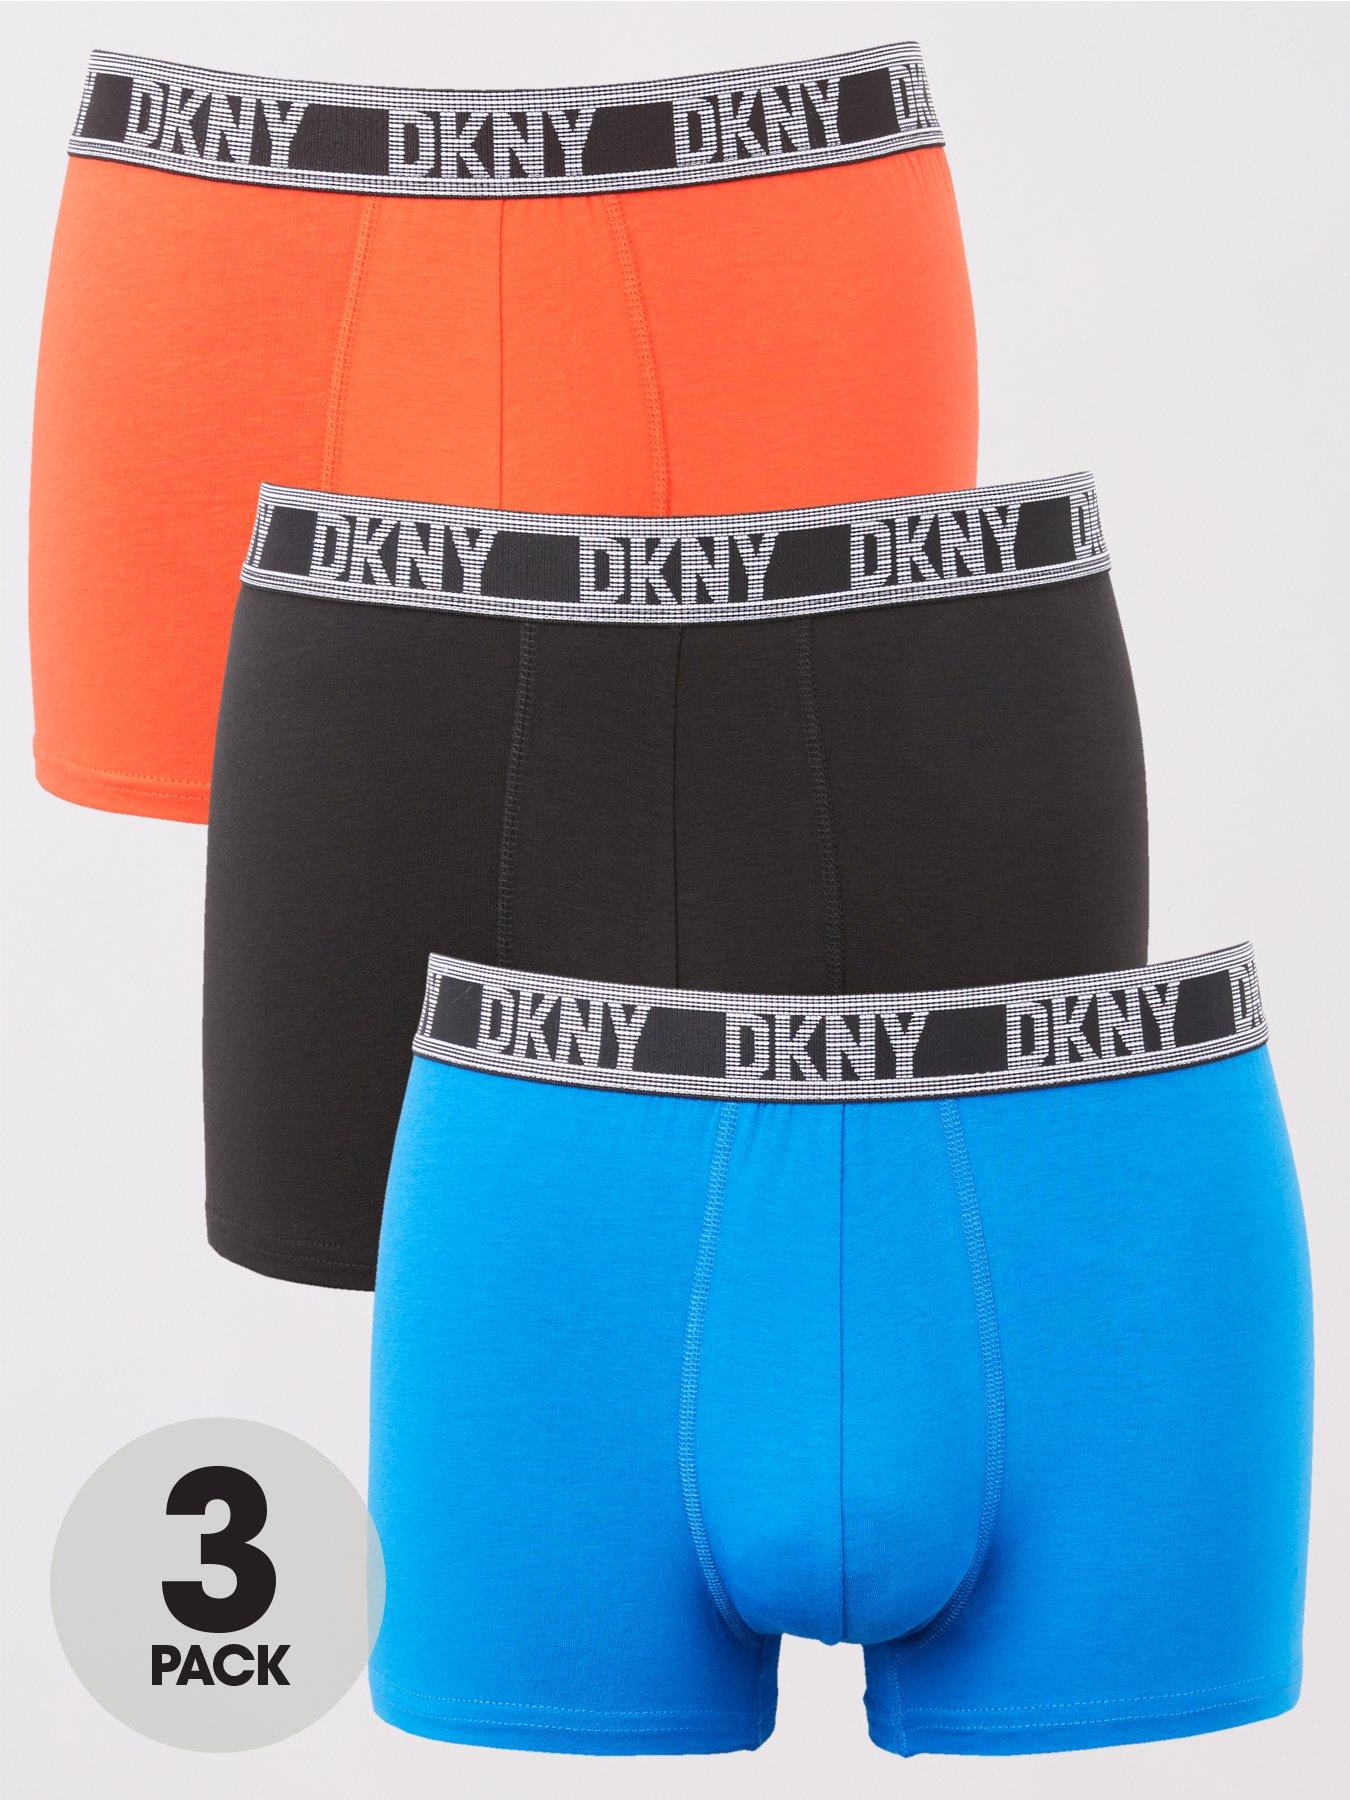 DKNY DKNY 3 Pack Boxer Shorts